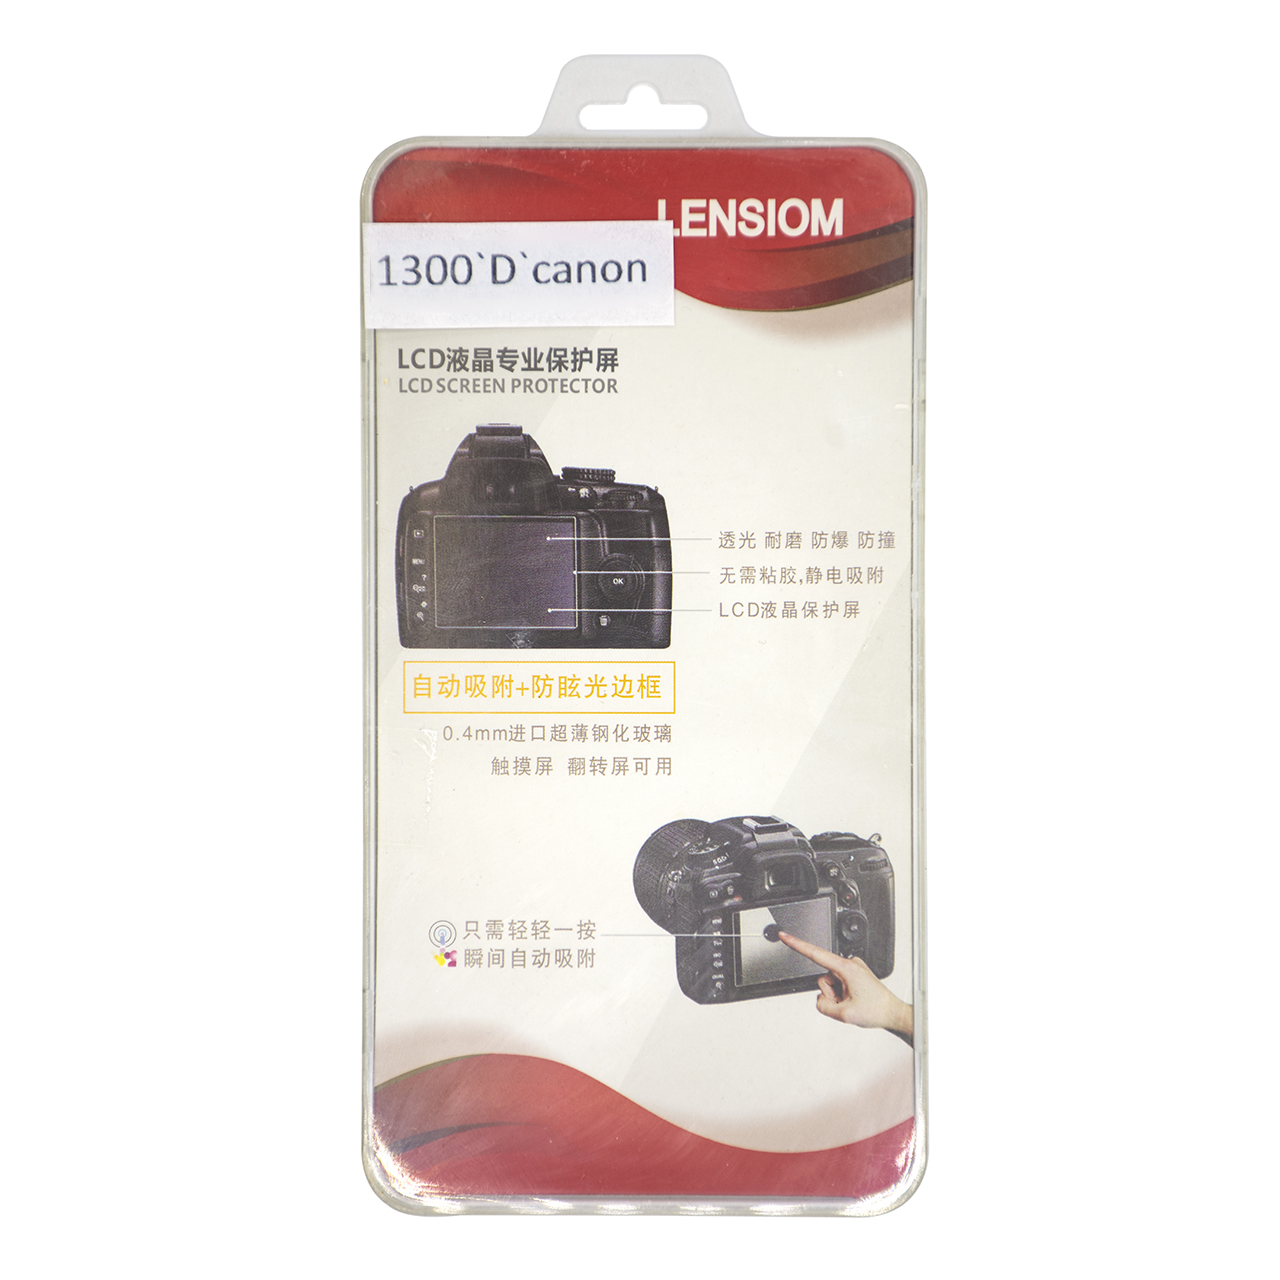 محافظ صفحه نمایش دوربین لنزیوم مدل L1300D مناسب برای کانن 1300D